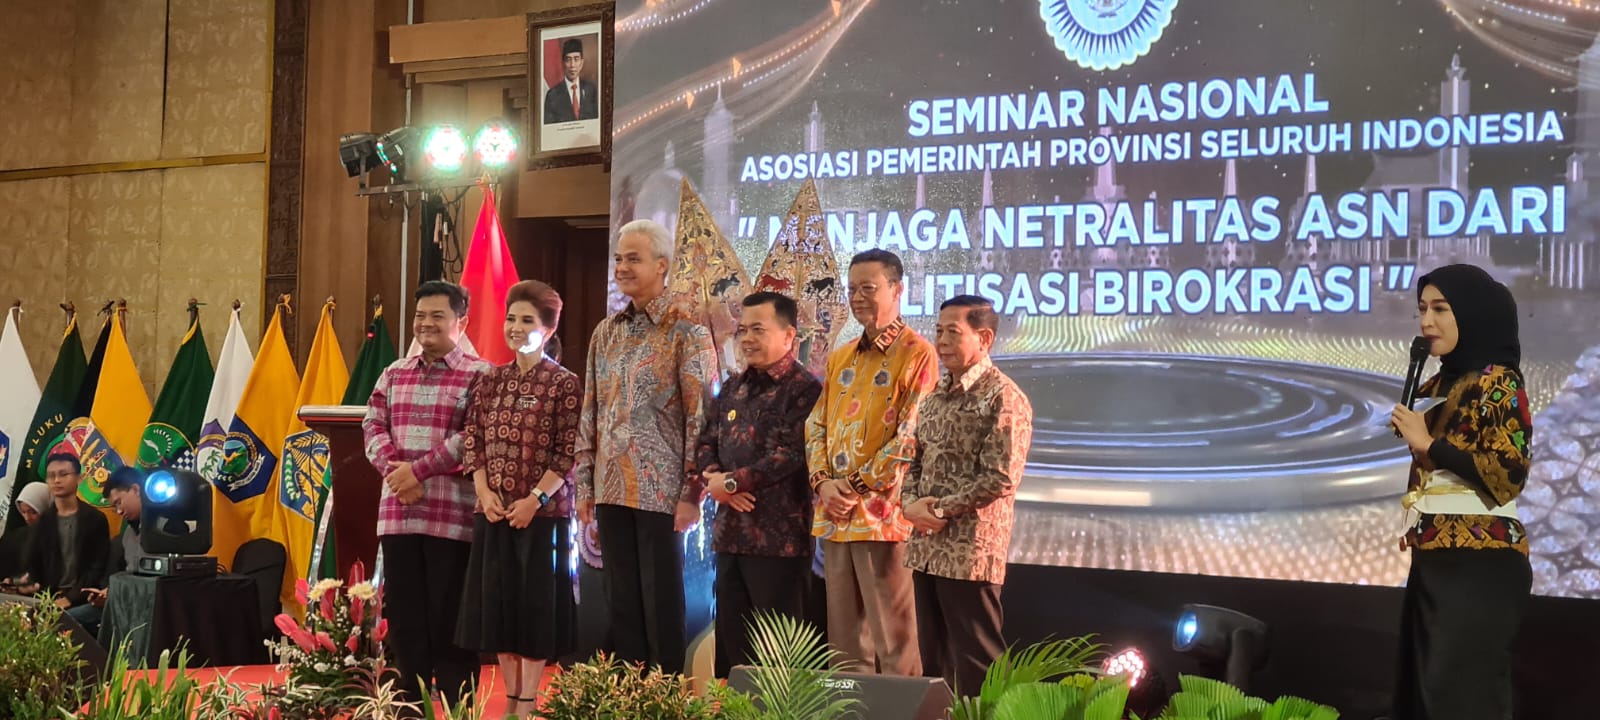 Seminar Nasional Asosiasi Pemerintah Provinsi Jambi Seluruh Indonesia dengan Tema "MENJAGA NETRALITAS ASN DARI POLITISI BIROKRASI"